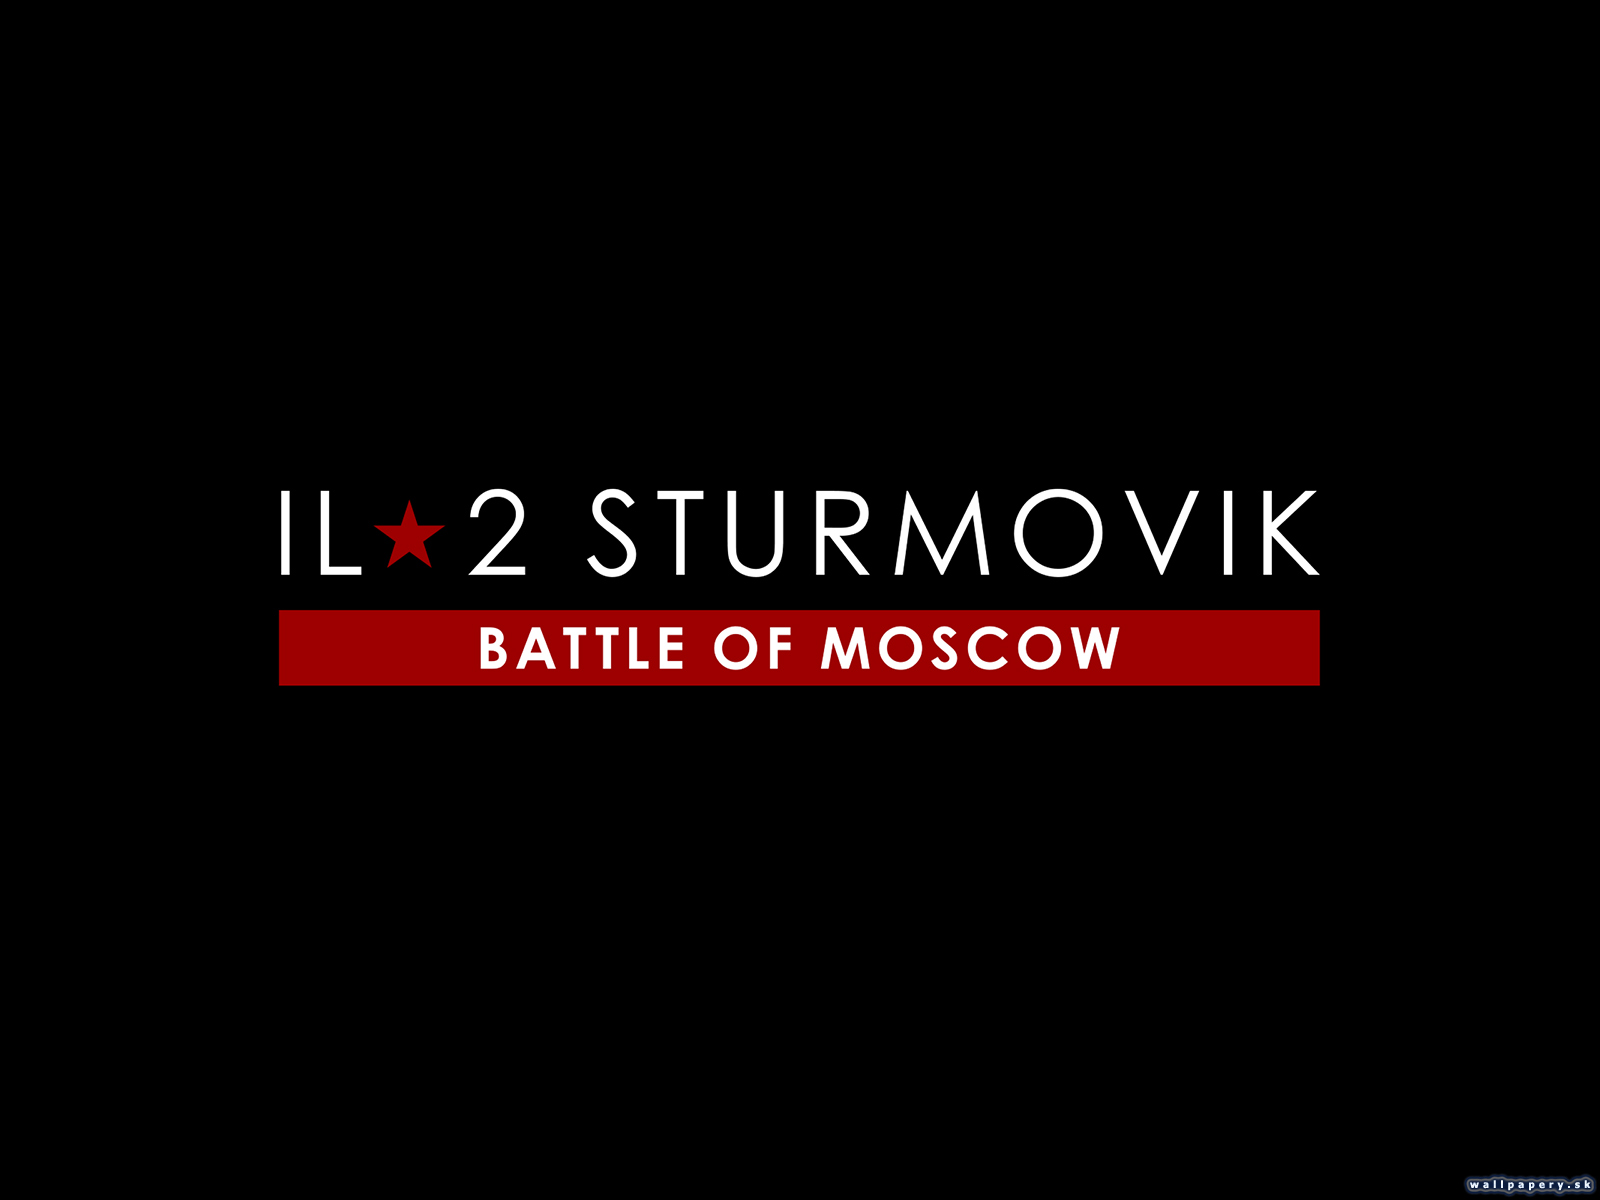 IL-2 Sturmovik: Battle of Moscow - wallpaper 2